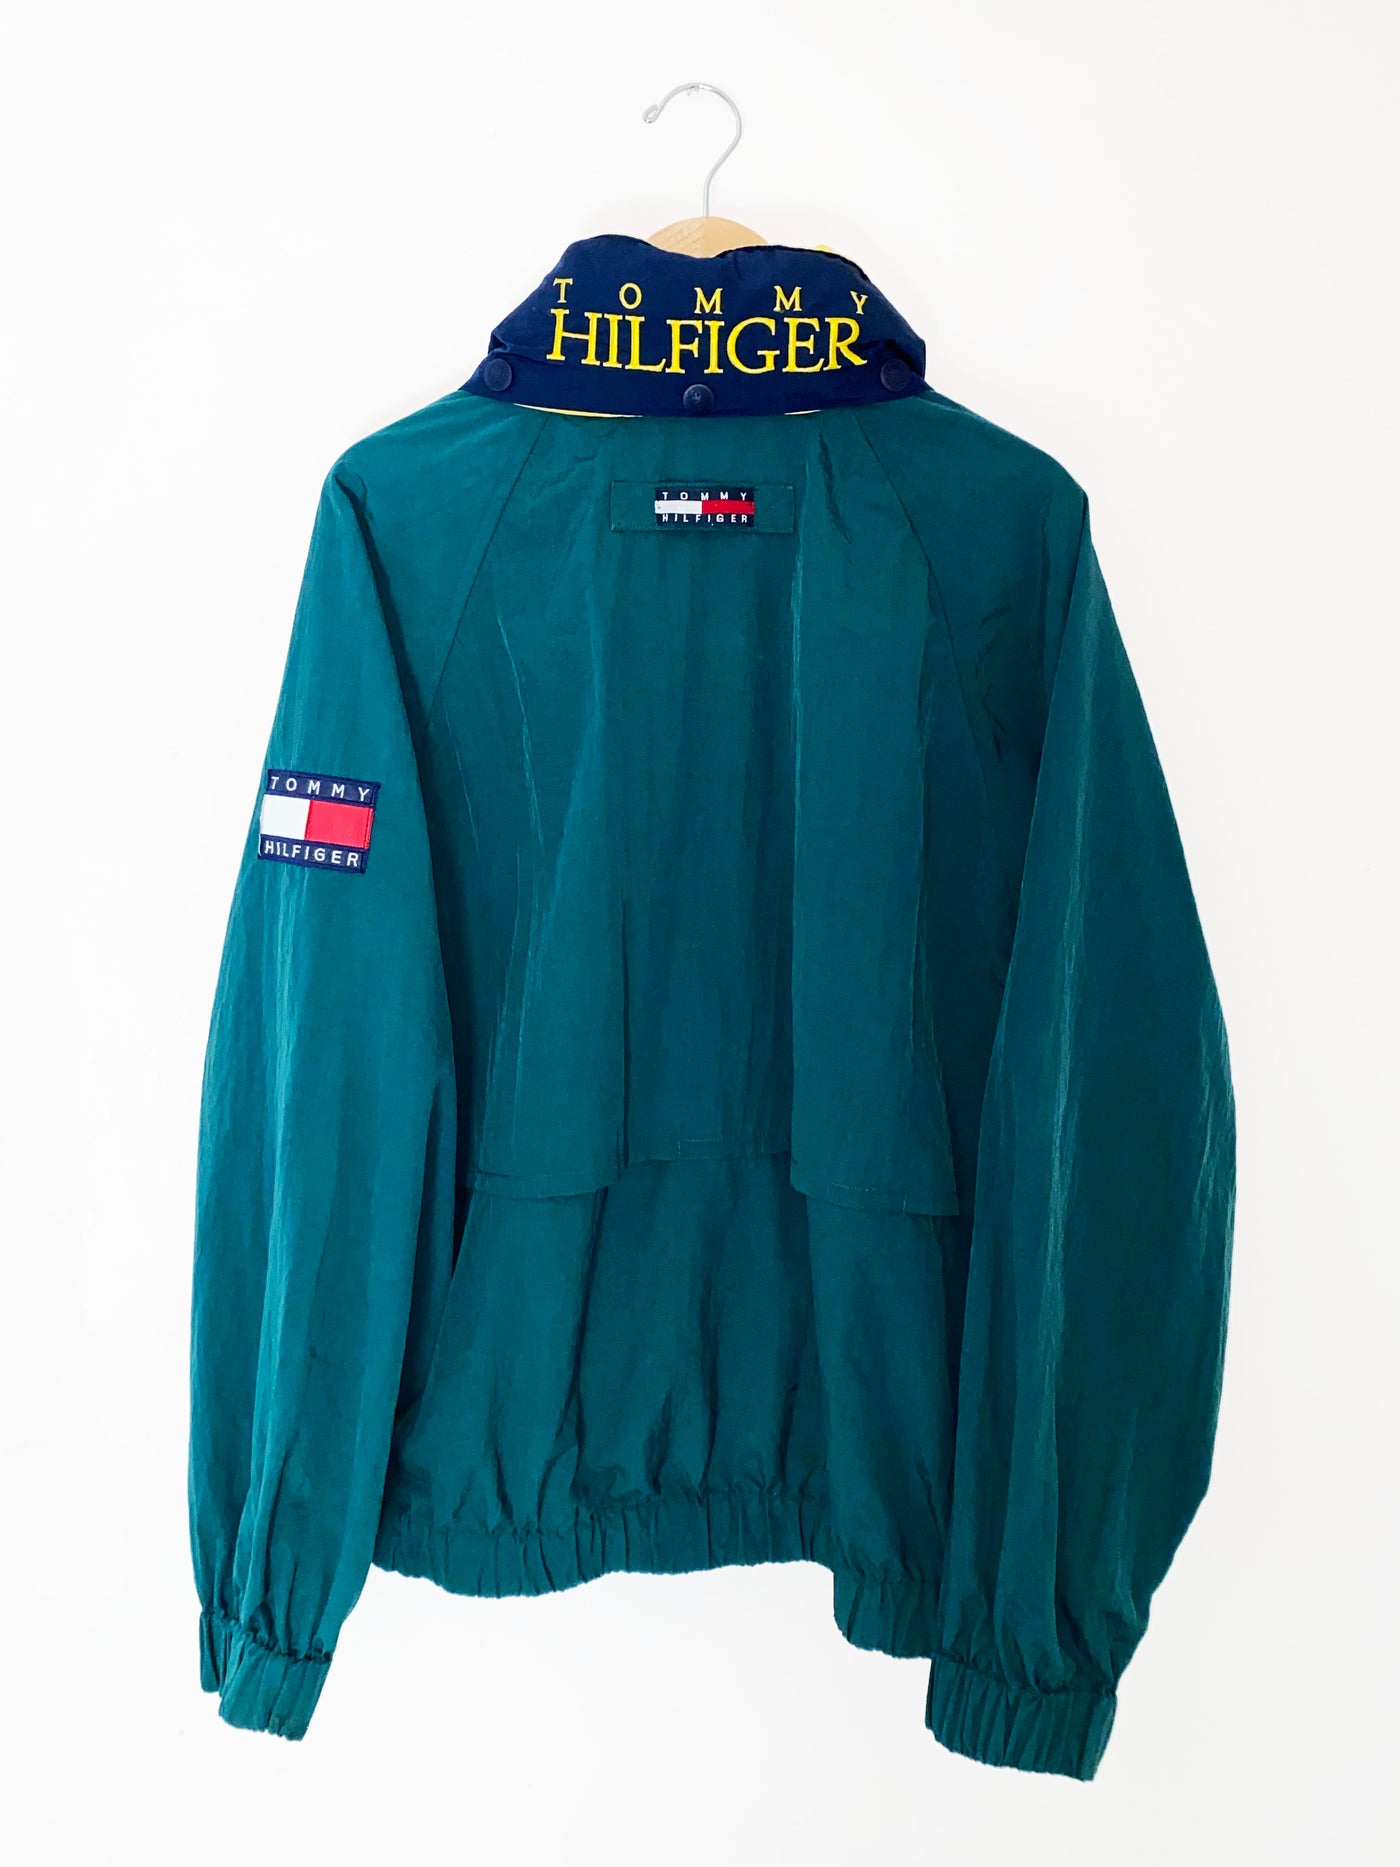 Vintage Tommy Hilfiger Neck Spellout Jacket